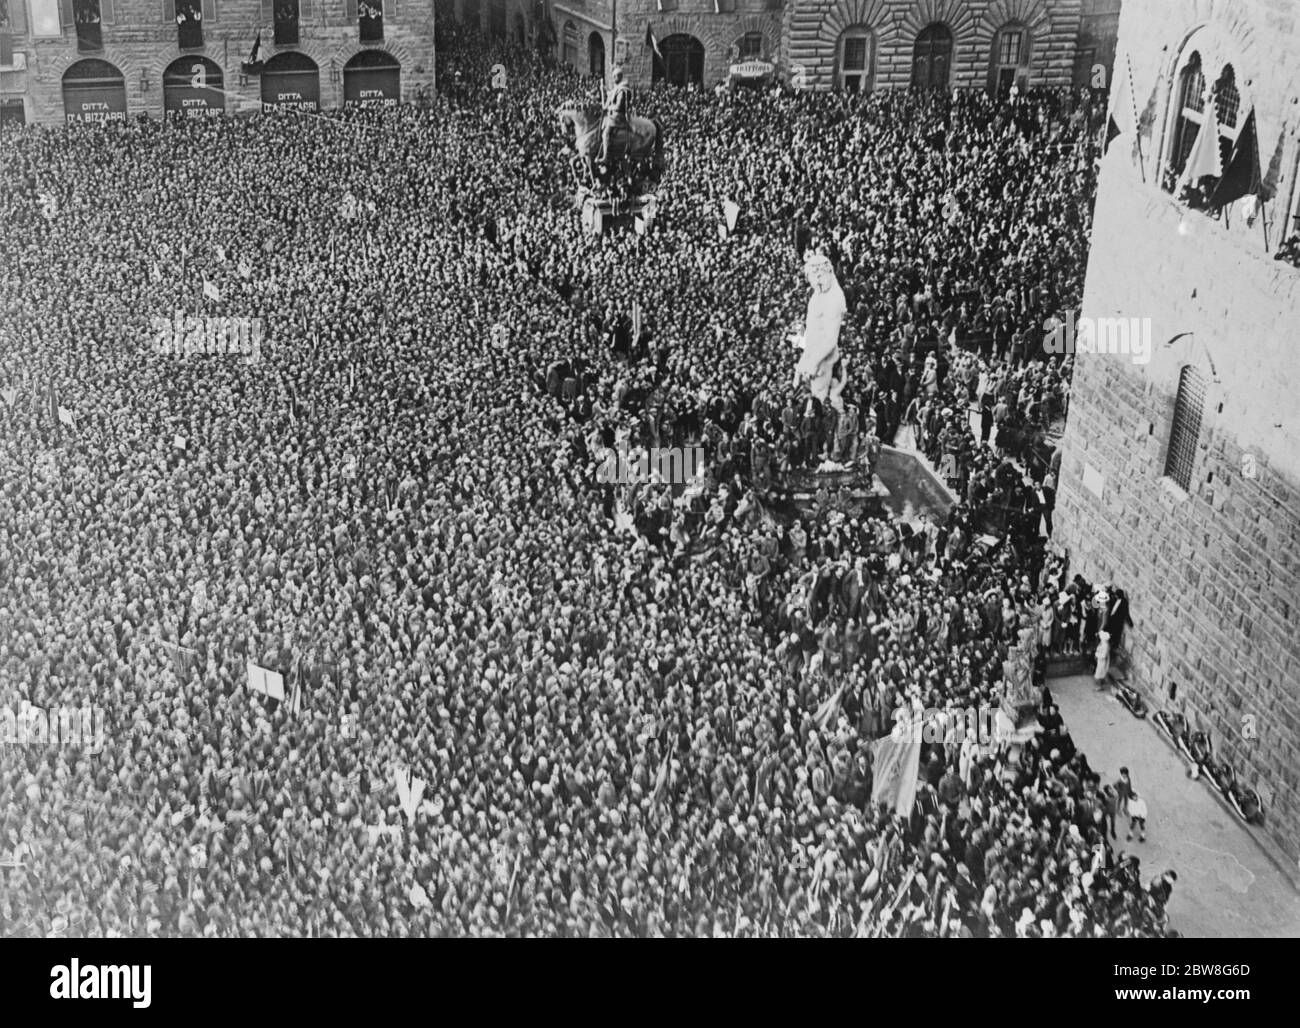 Über 100,000 Menschen hören eine feurige Rede von Mussolini . Signor Benito Mussolini hielt eine feurige Rede zu einer Versammlung von mehr als 100,000 Menschen in und um die Piazza della Signoria , Florenz . Ein Blick auf die riesige Menschenmenge. 21 Mai 1930 Stockfoto